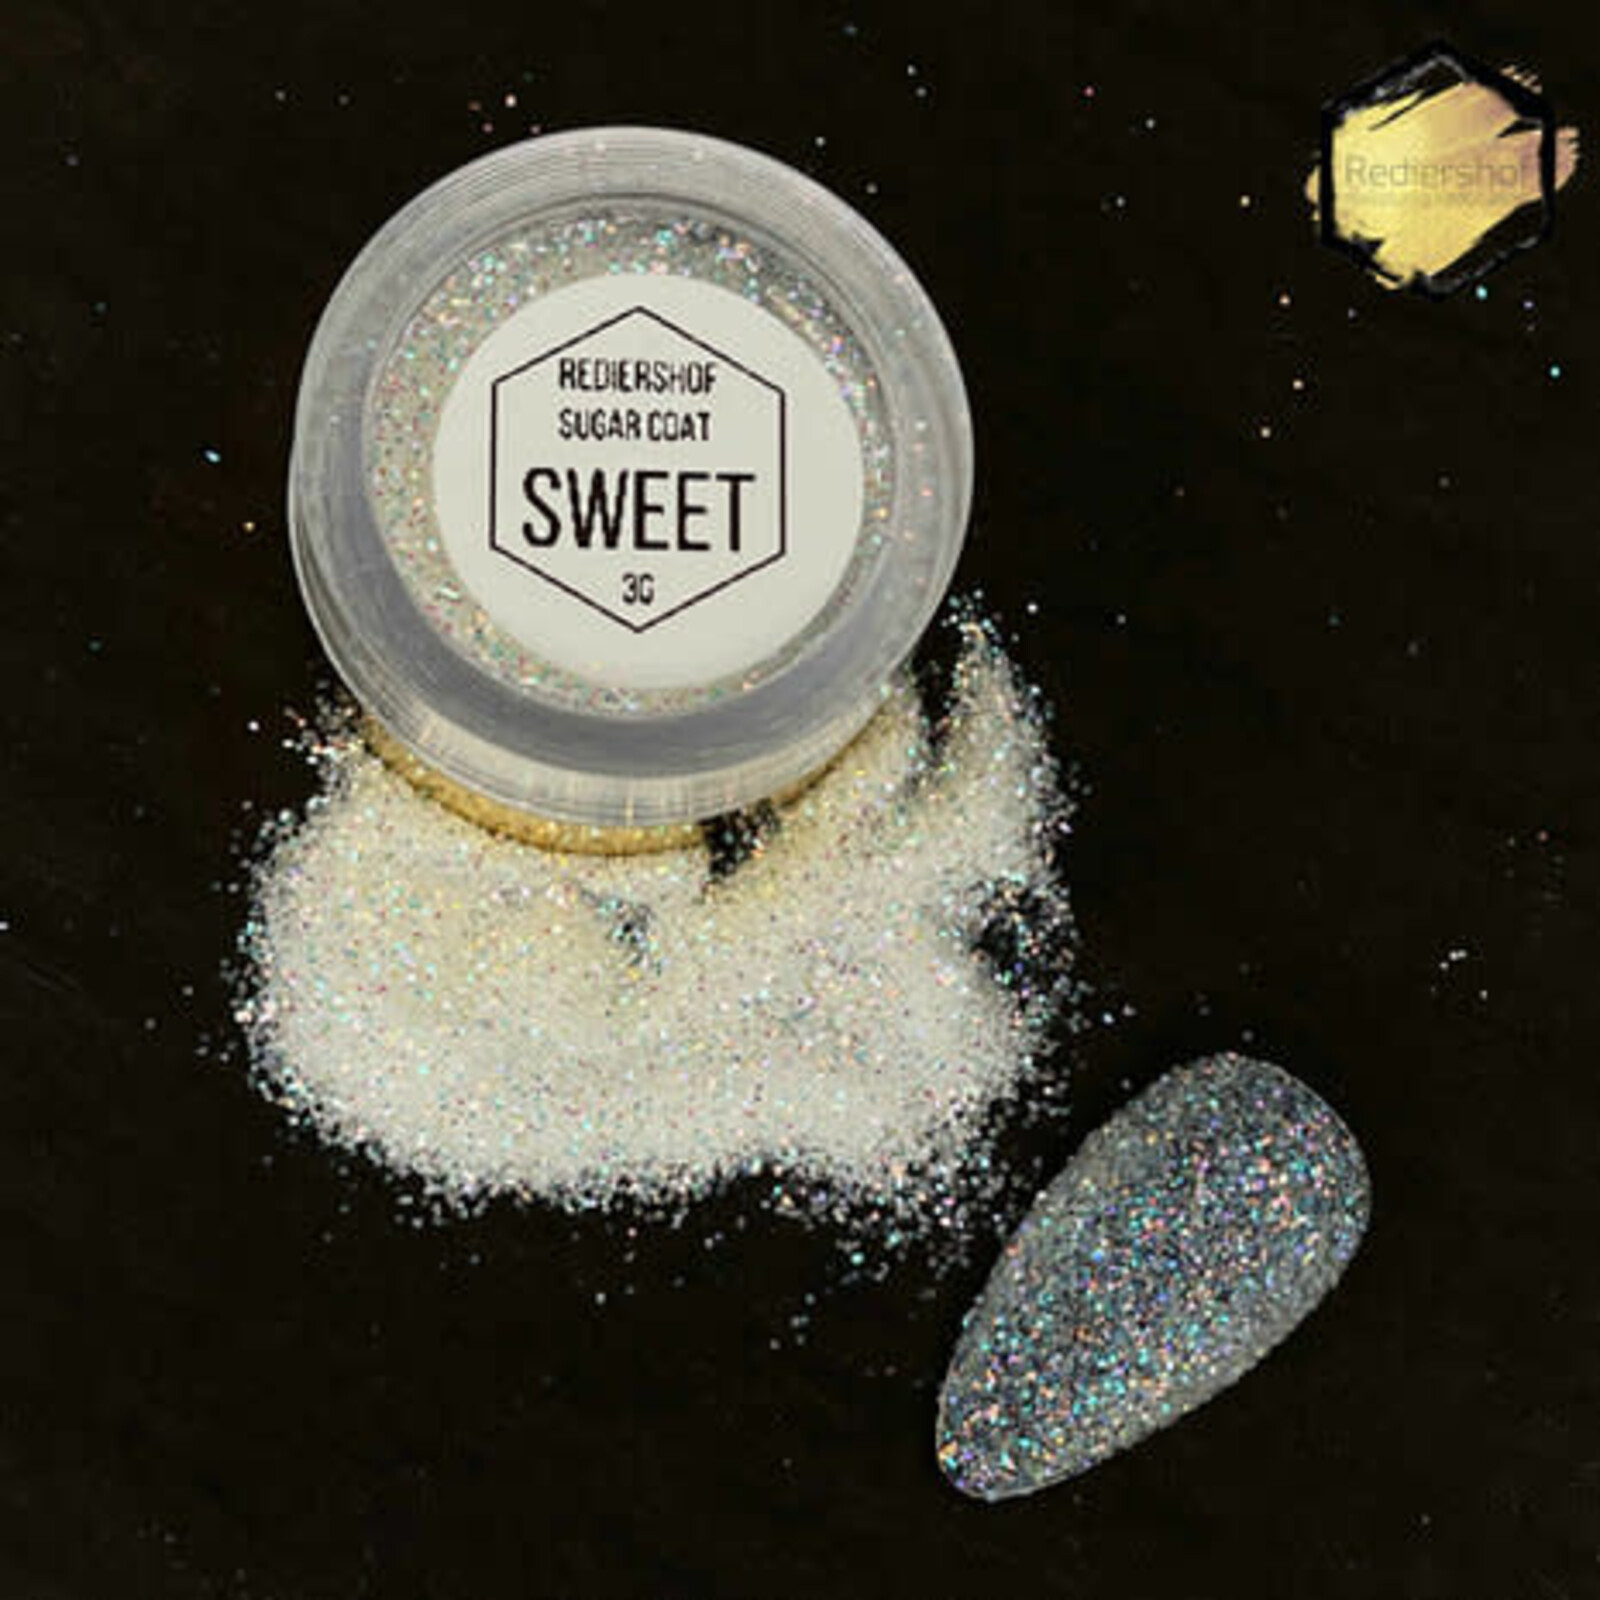 Rediershof Rediershof Sugar Coat Sweet